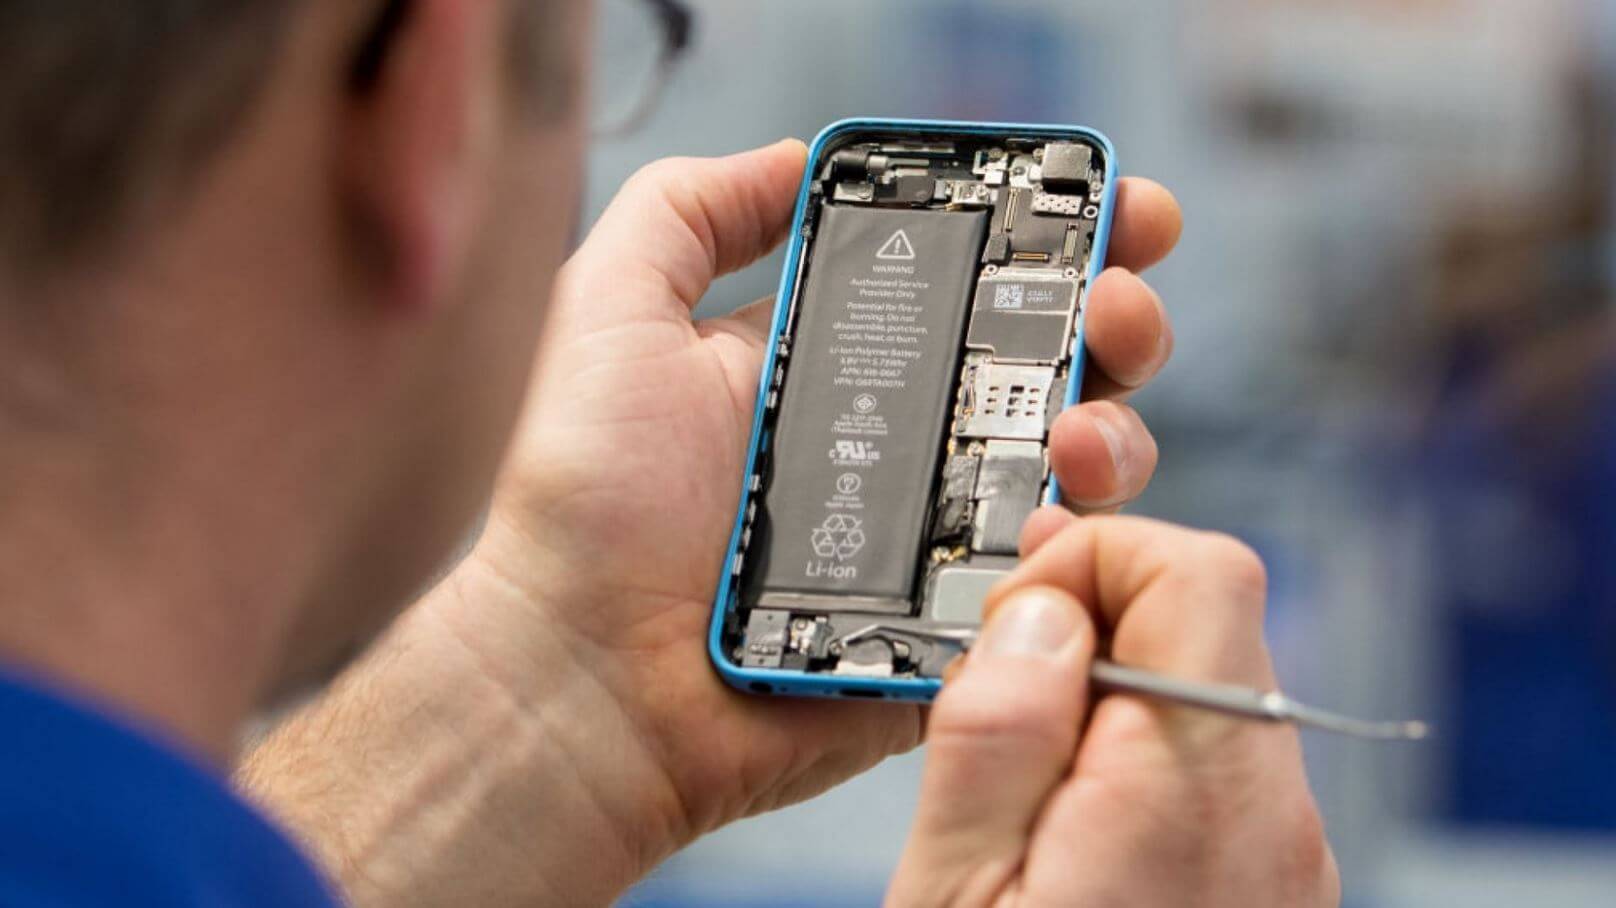 Как ремонтировать Айфон по гарантии. Отремонтировать iPhone по гарантии можно, но не все модели. Фото.